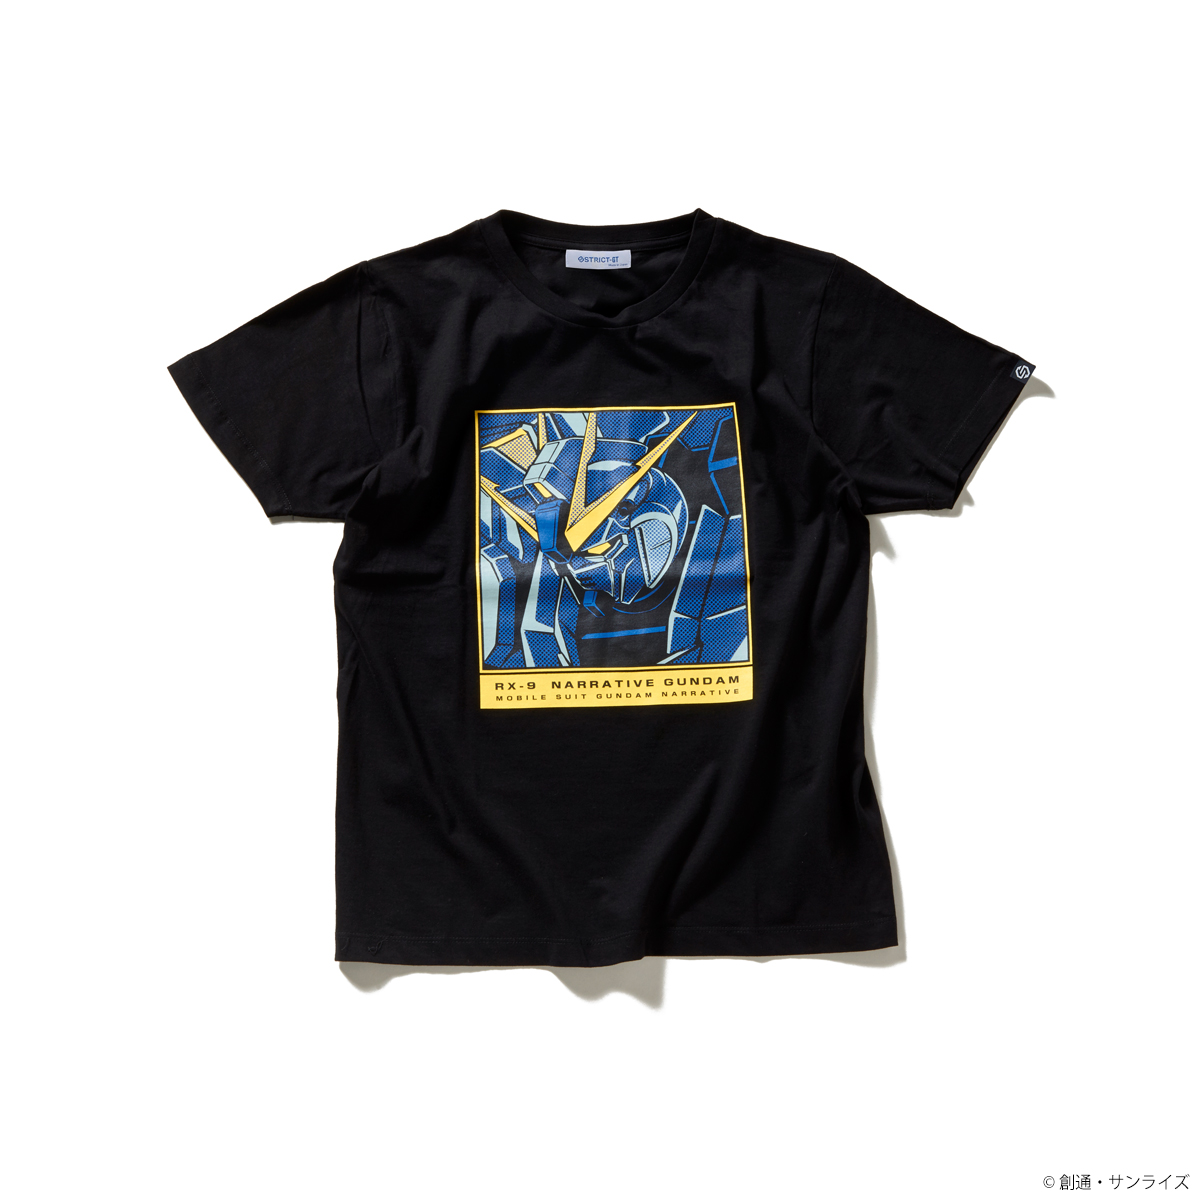 『機動戦士ガンダムNT』POP ART Tシャツ ナラティブガンダム